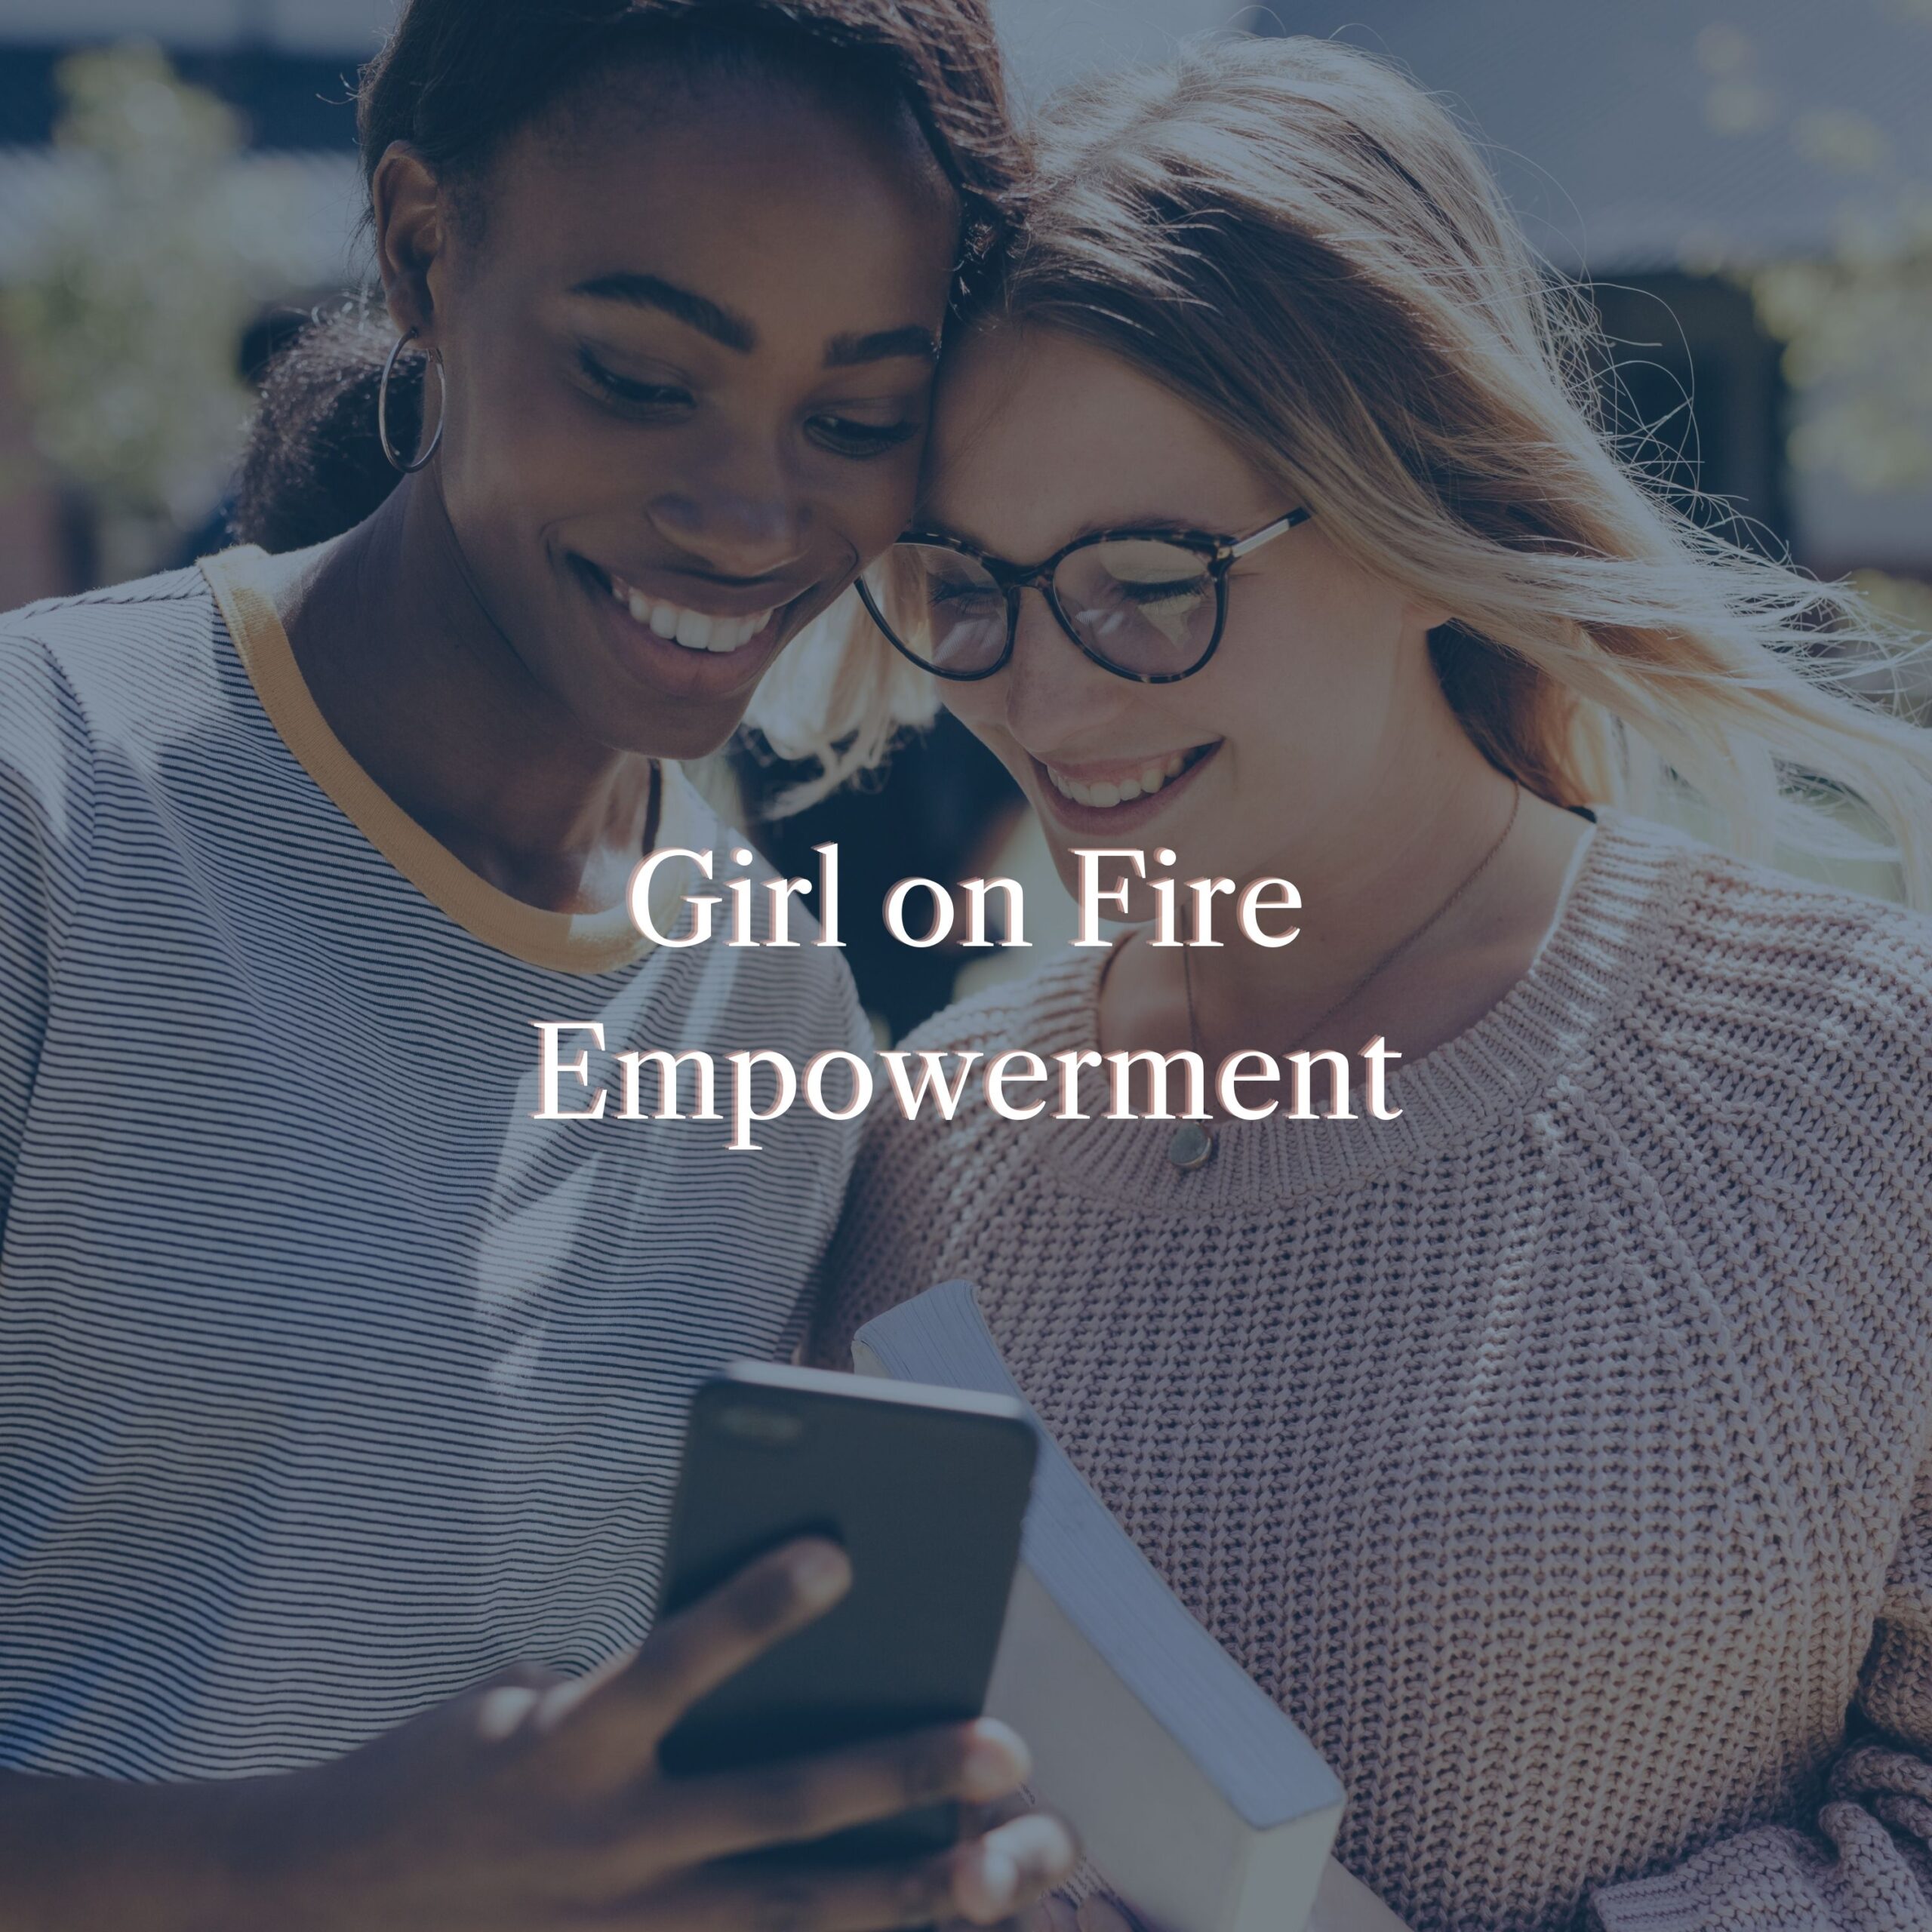 Girl on Fire Empowerment Program by Jenny Kierstead